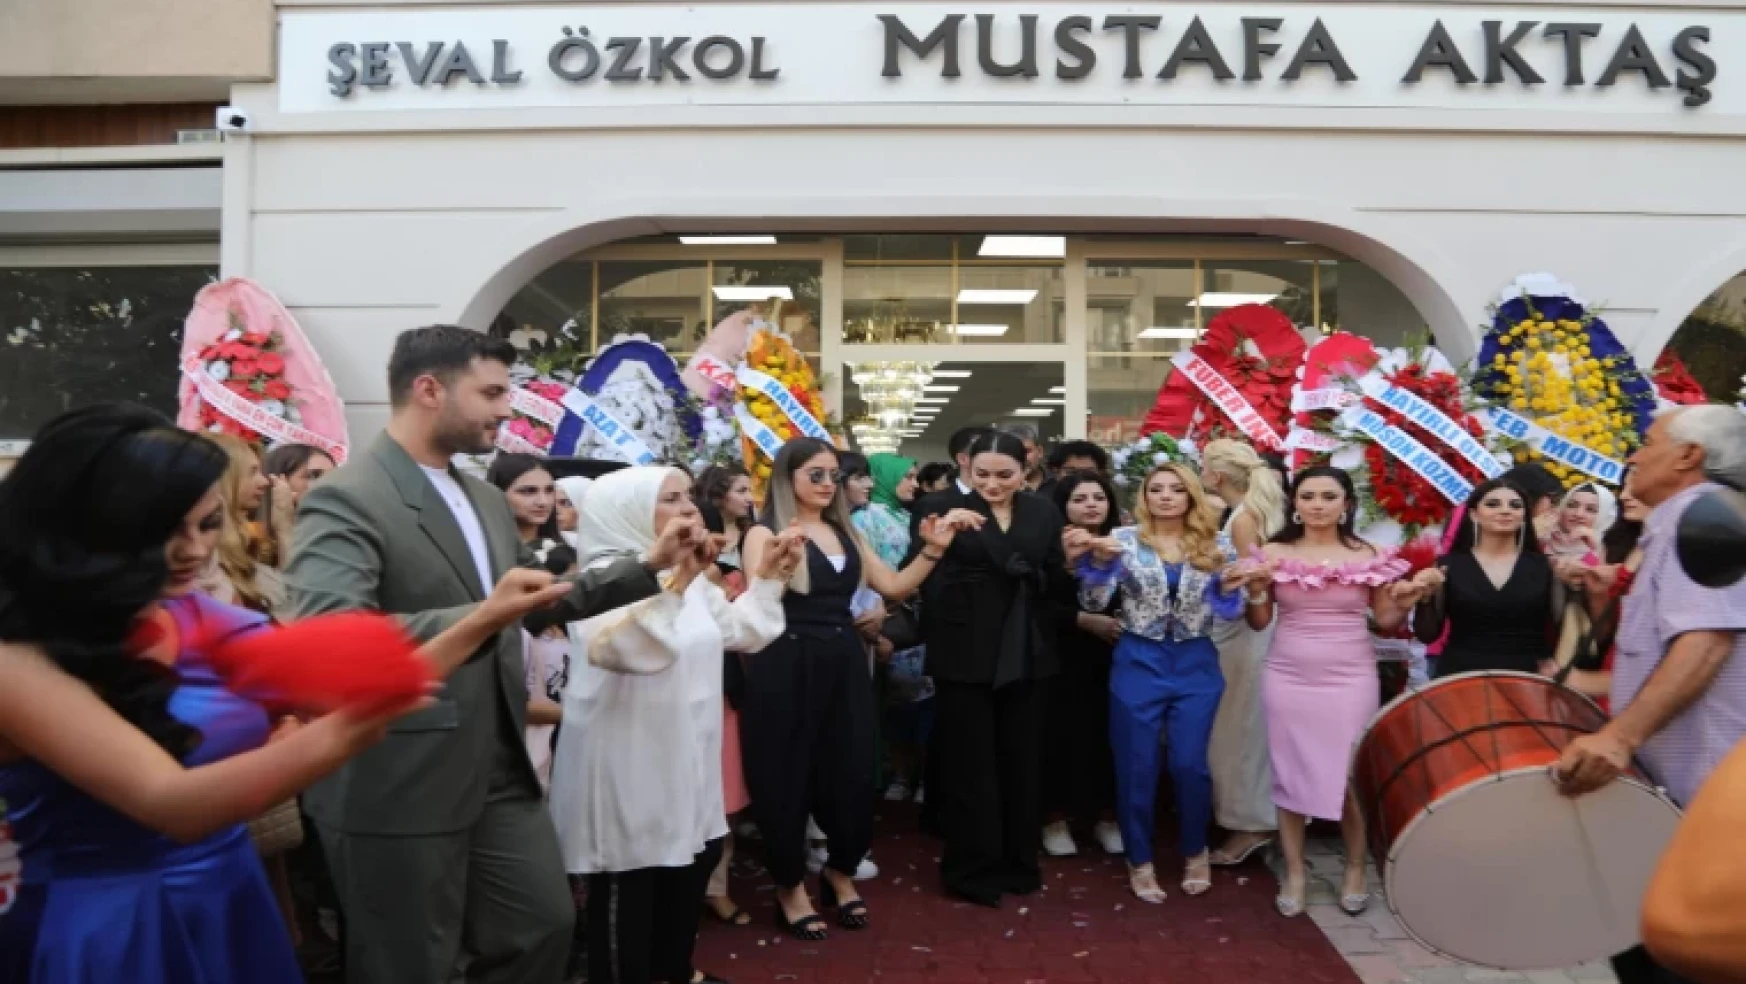 Mustafa Aktaş Makyaj Stüdyosu Görkemli Törenle Açıldı 